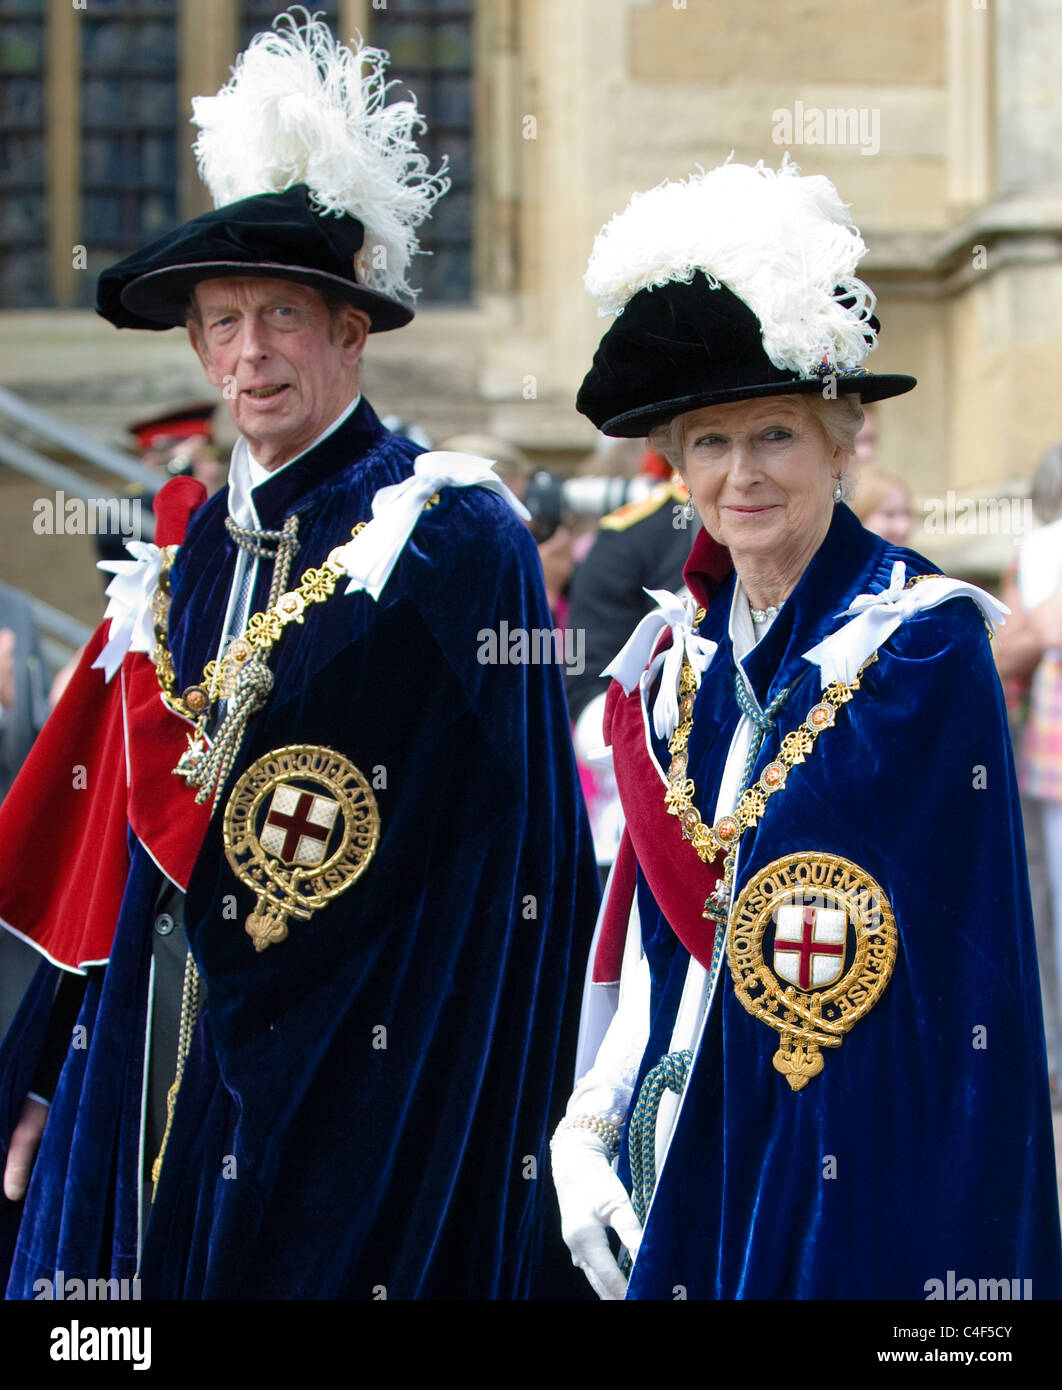 Son Altesse Royale la princesse Alexandra, l'honorable lady Ogilvy et de Son Altesse Royale le duc de Kent en marche la jarretière Procession, château de Windsor Banque D'Images